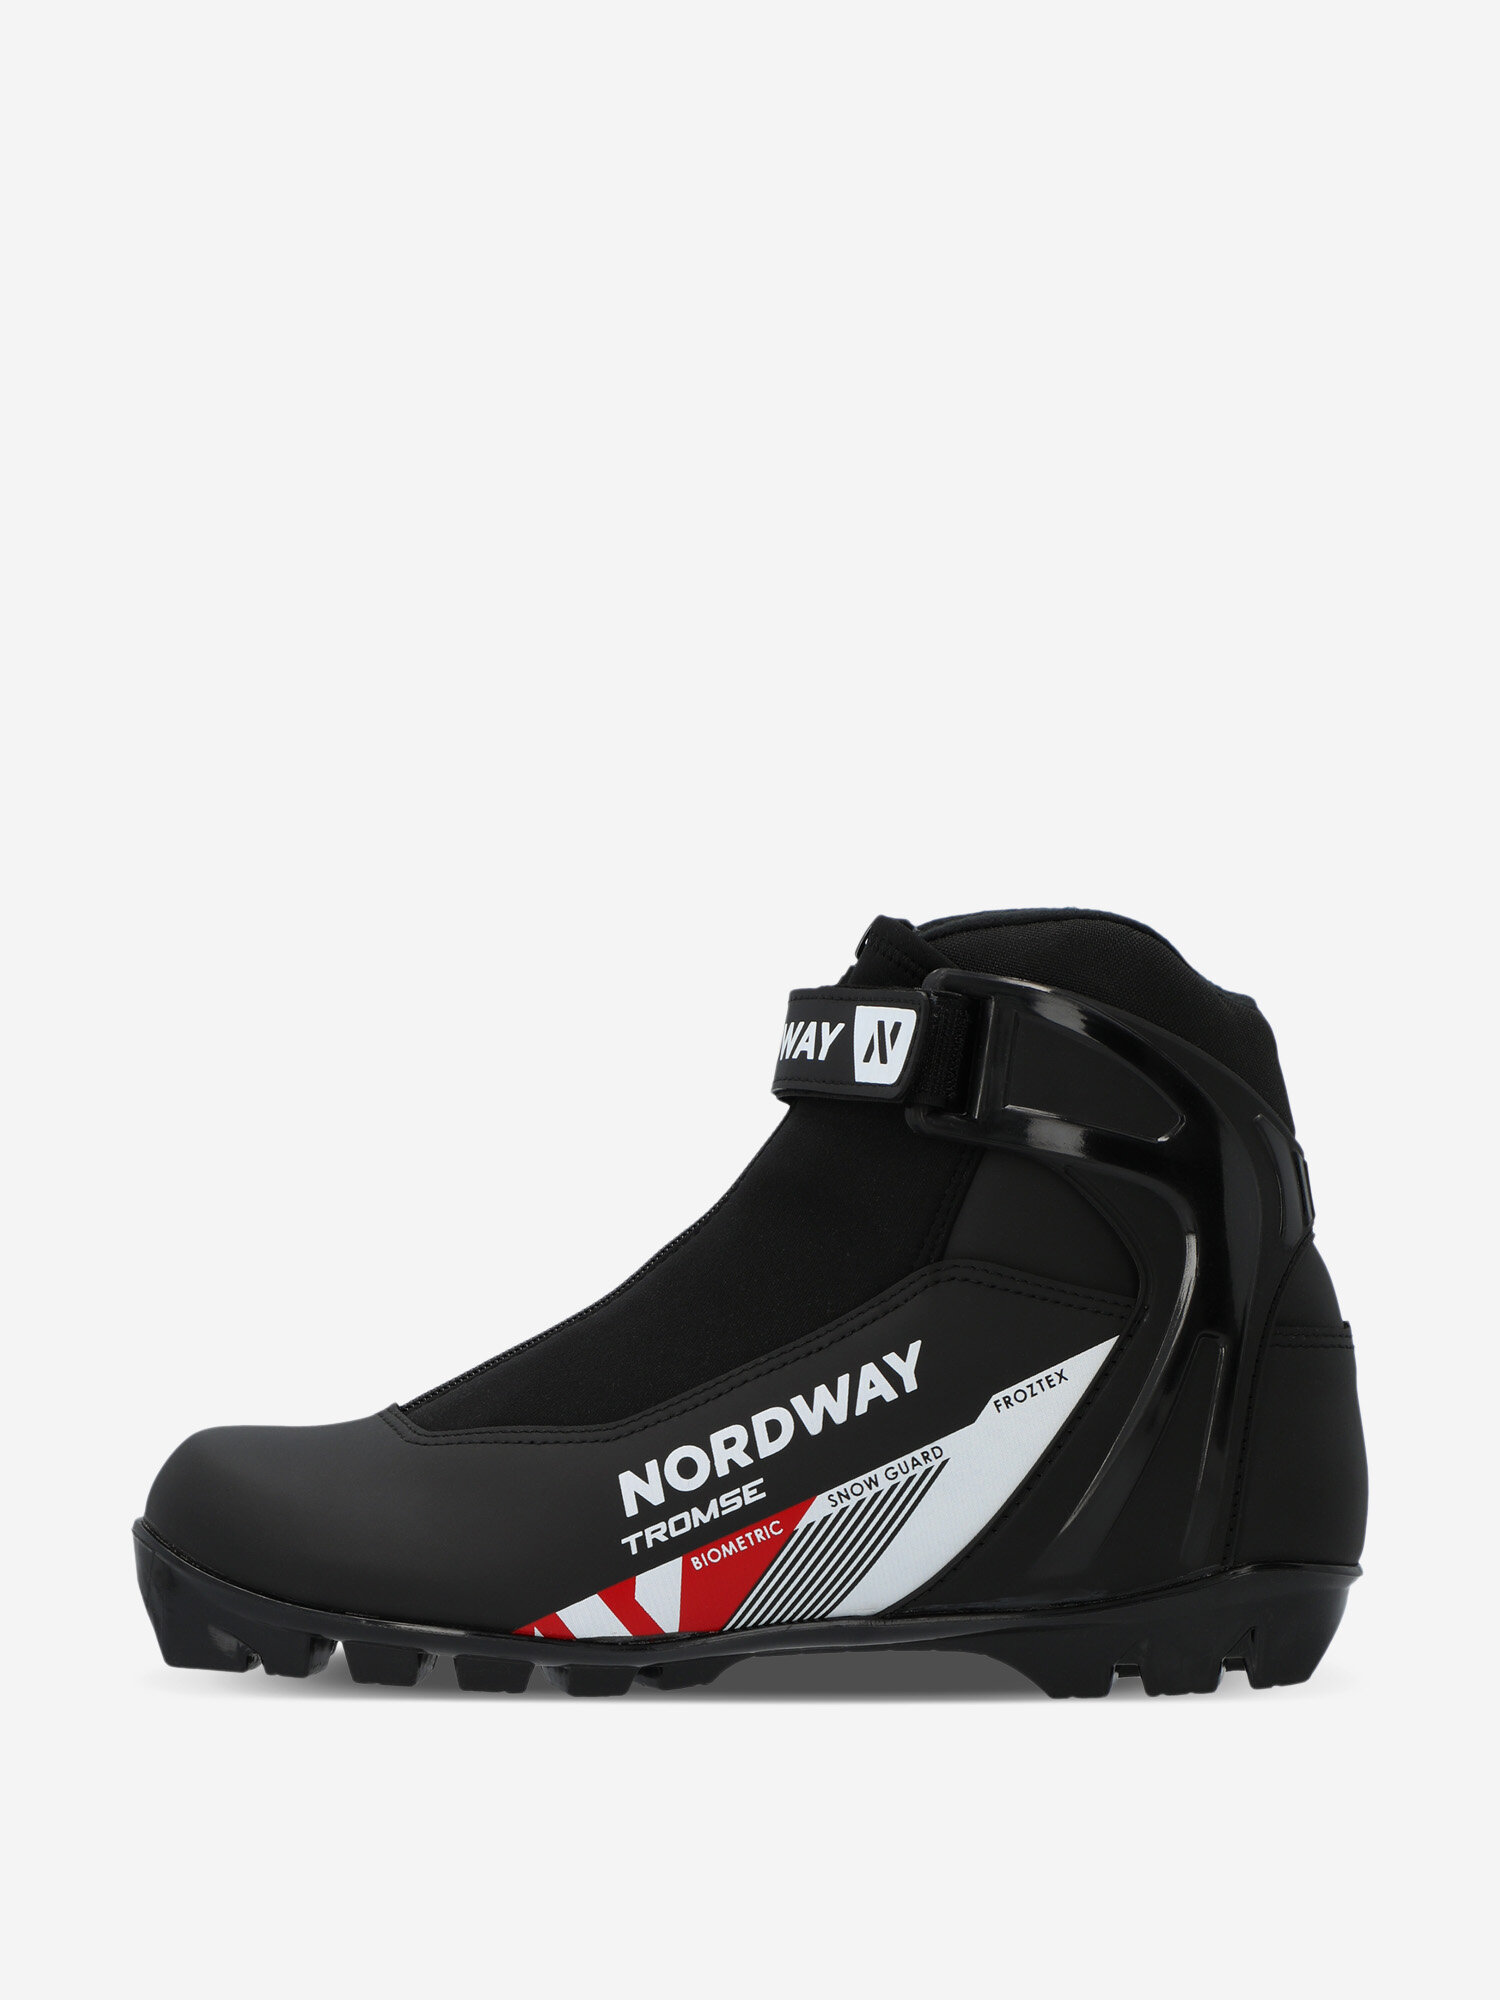 Ботинки для беговых лыж Nordway Tromse NNN Черный; RUS: 41, Ориг: 42